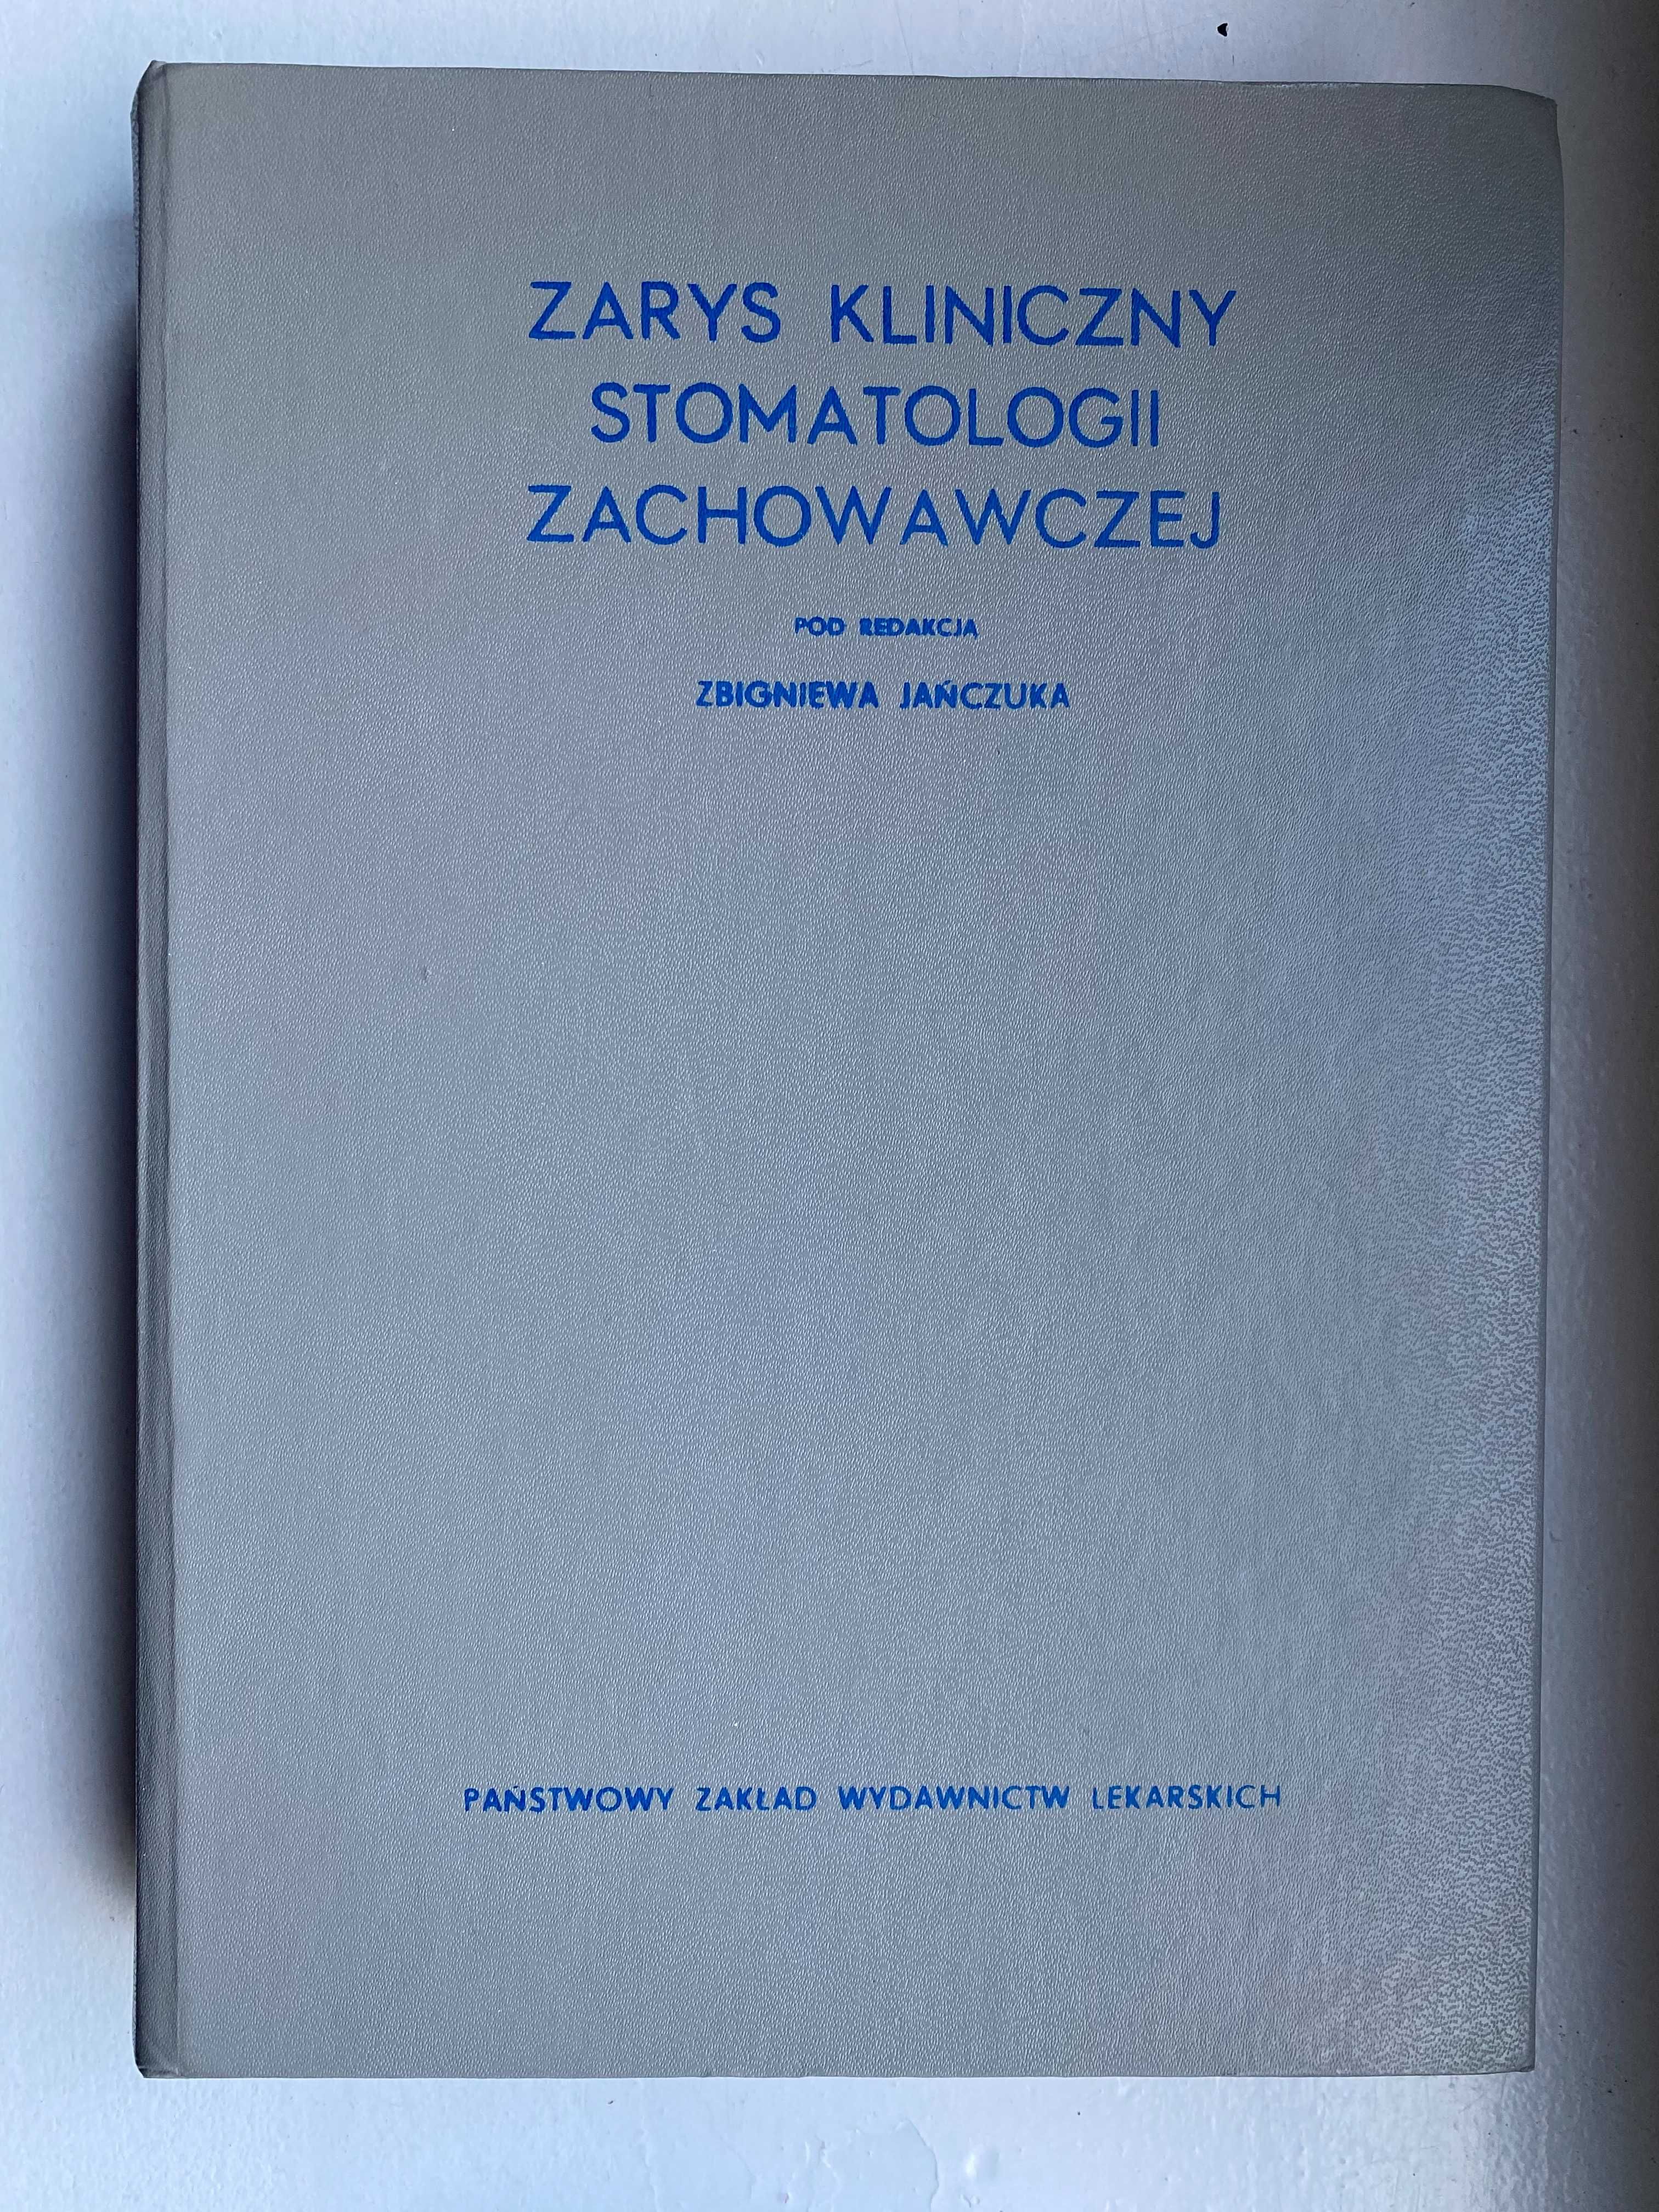 Zarys kliniczny stomatologii zachowawczej, prof. Zbigniew Jańczuk 1976